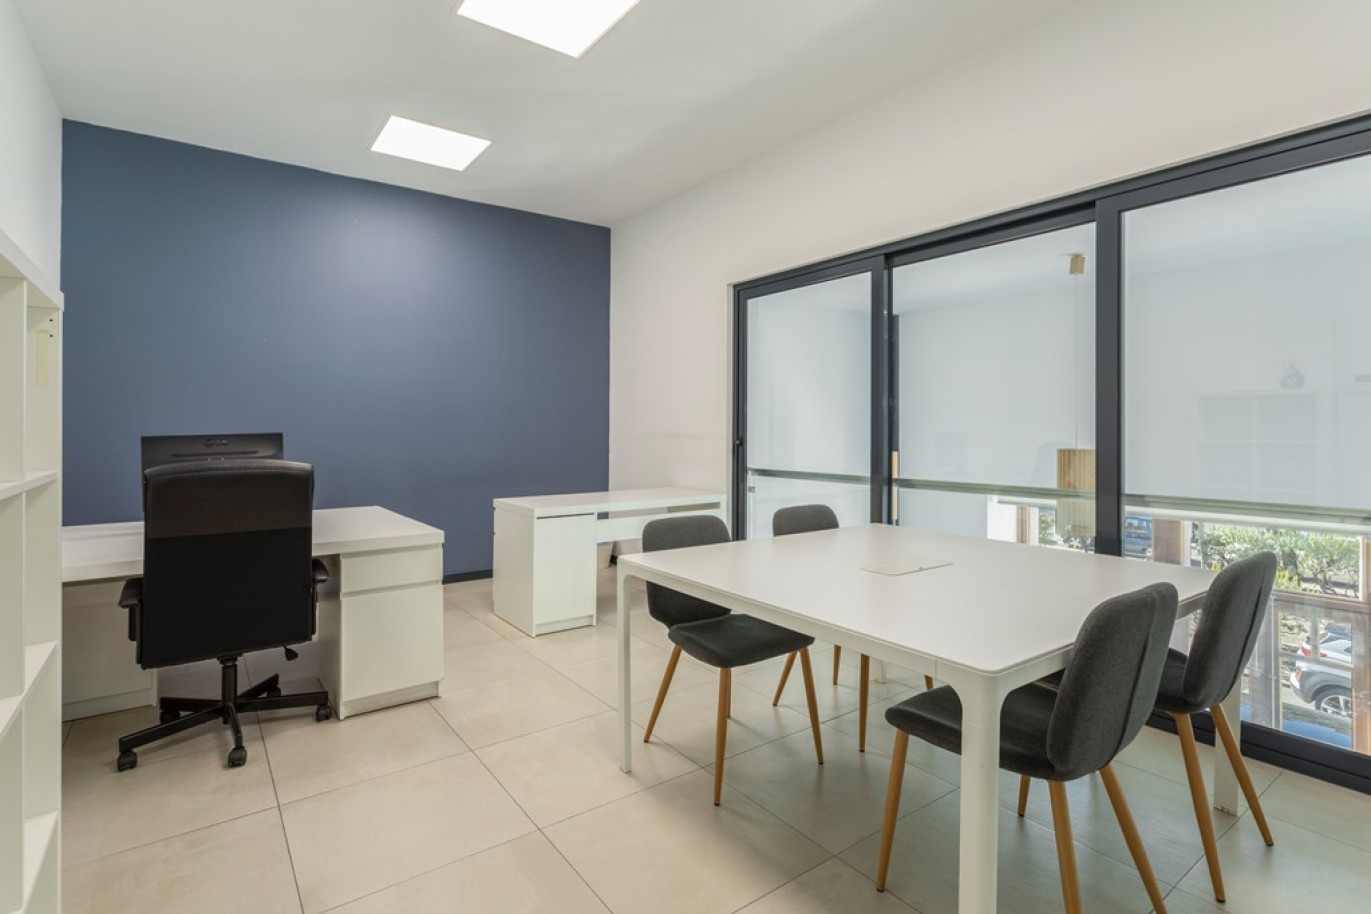 Edifício com 14 escritórios, para venda no centro de Loulé, Algarve_257597